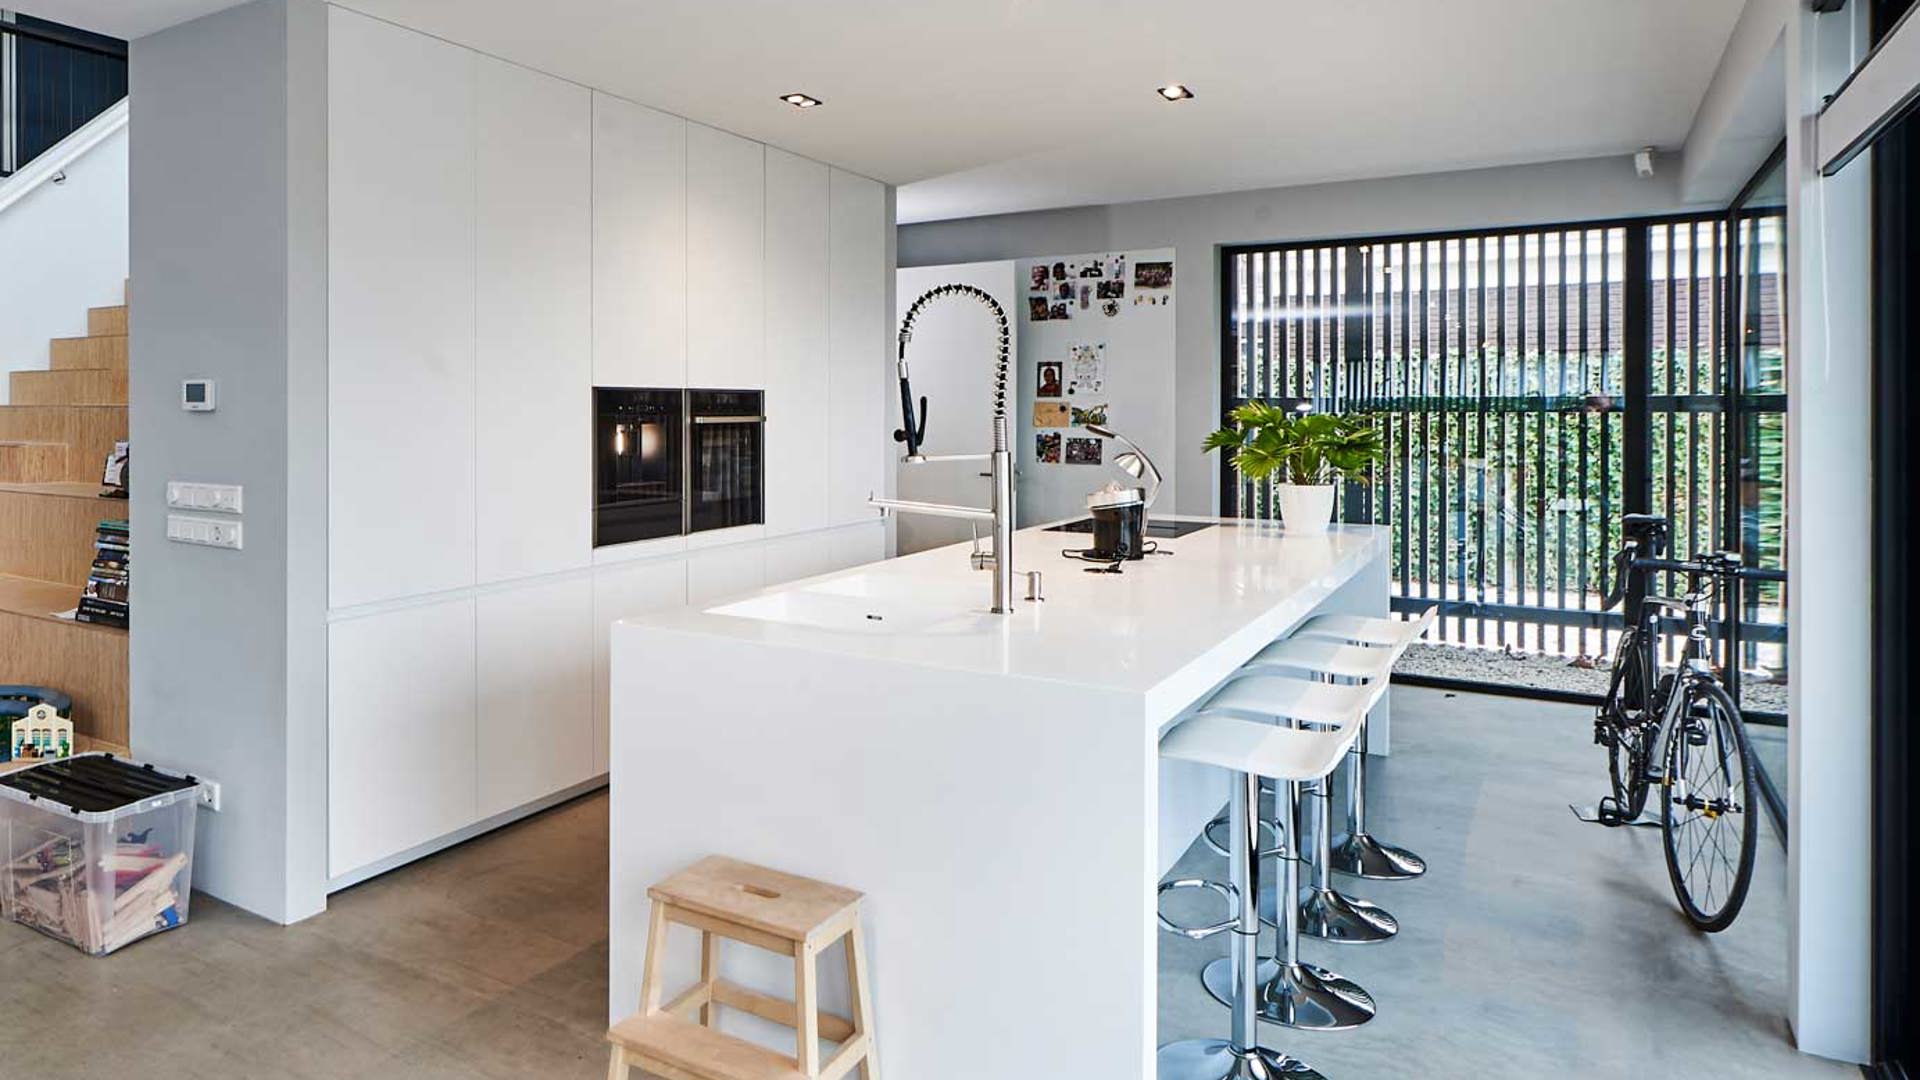 Kolibrie kraam mesh Witte keuken: gevoel van rust en ruimte. Laat u inspireren!